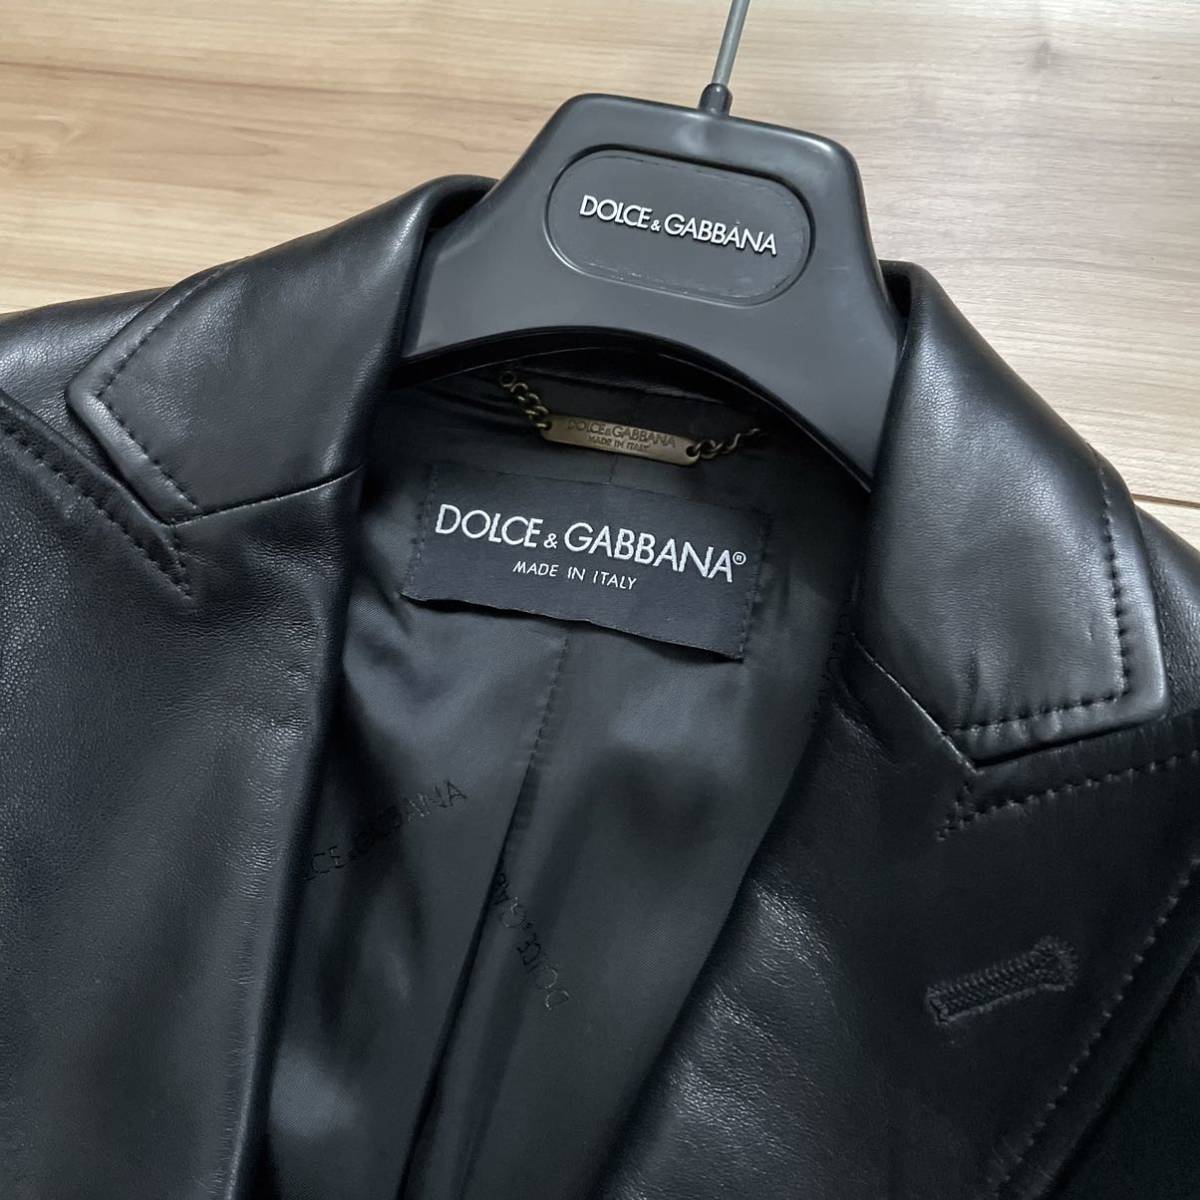 [ бесплатная доставка ][ пик ][ прекрасный товар ] Dolce & Gabbana овчина кожаный жакет чёрный черный 46 овечья кожа кожа ягненка выполненный в строгом стиле 